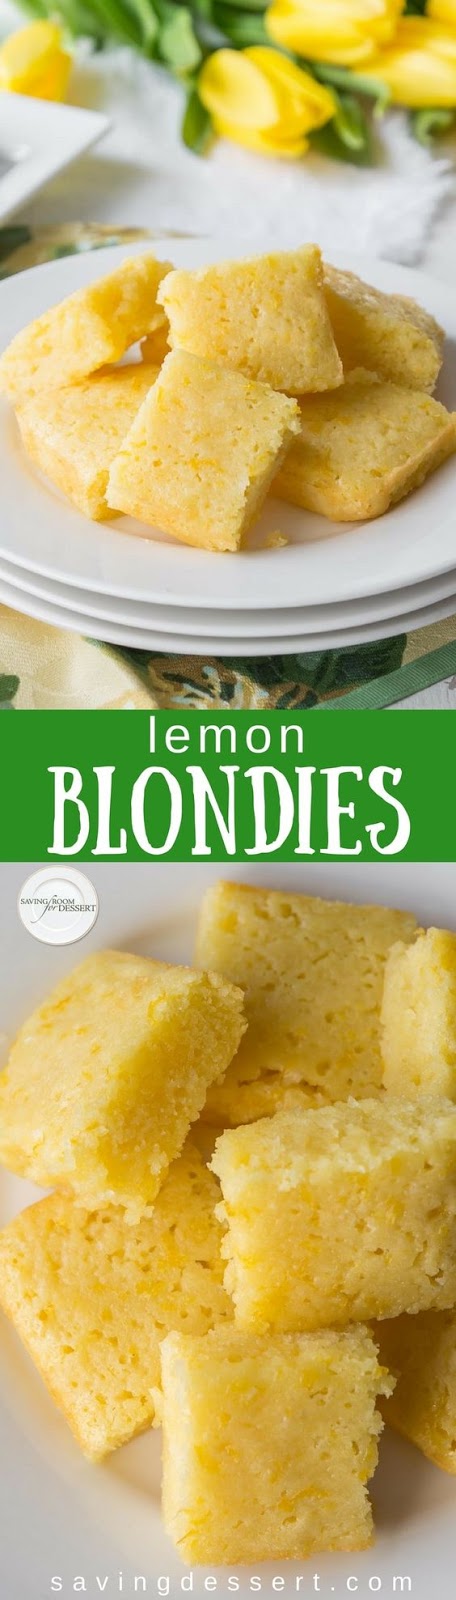 Lemon Blondies